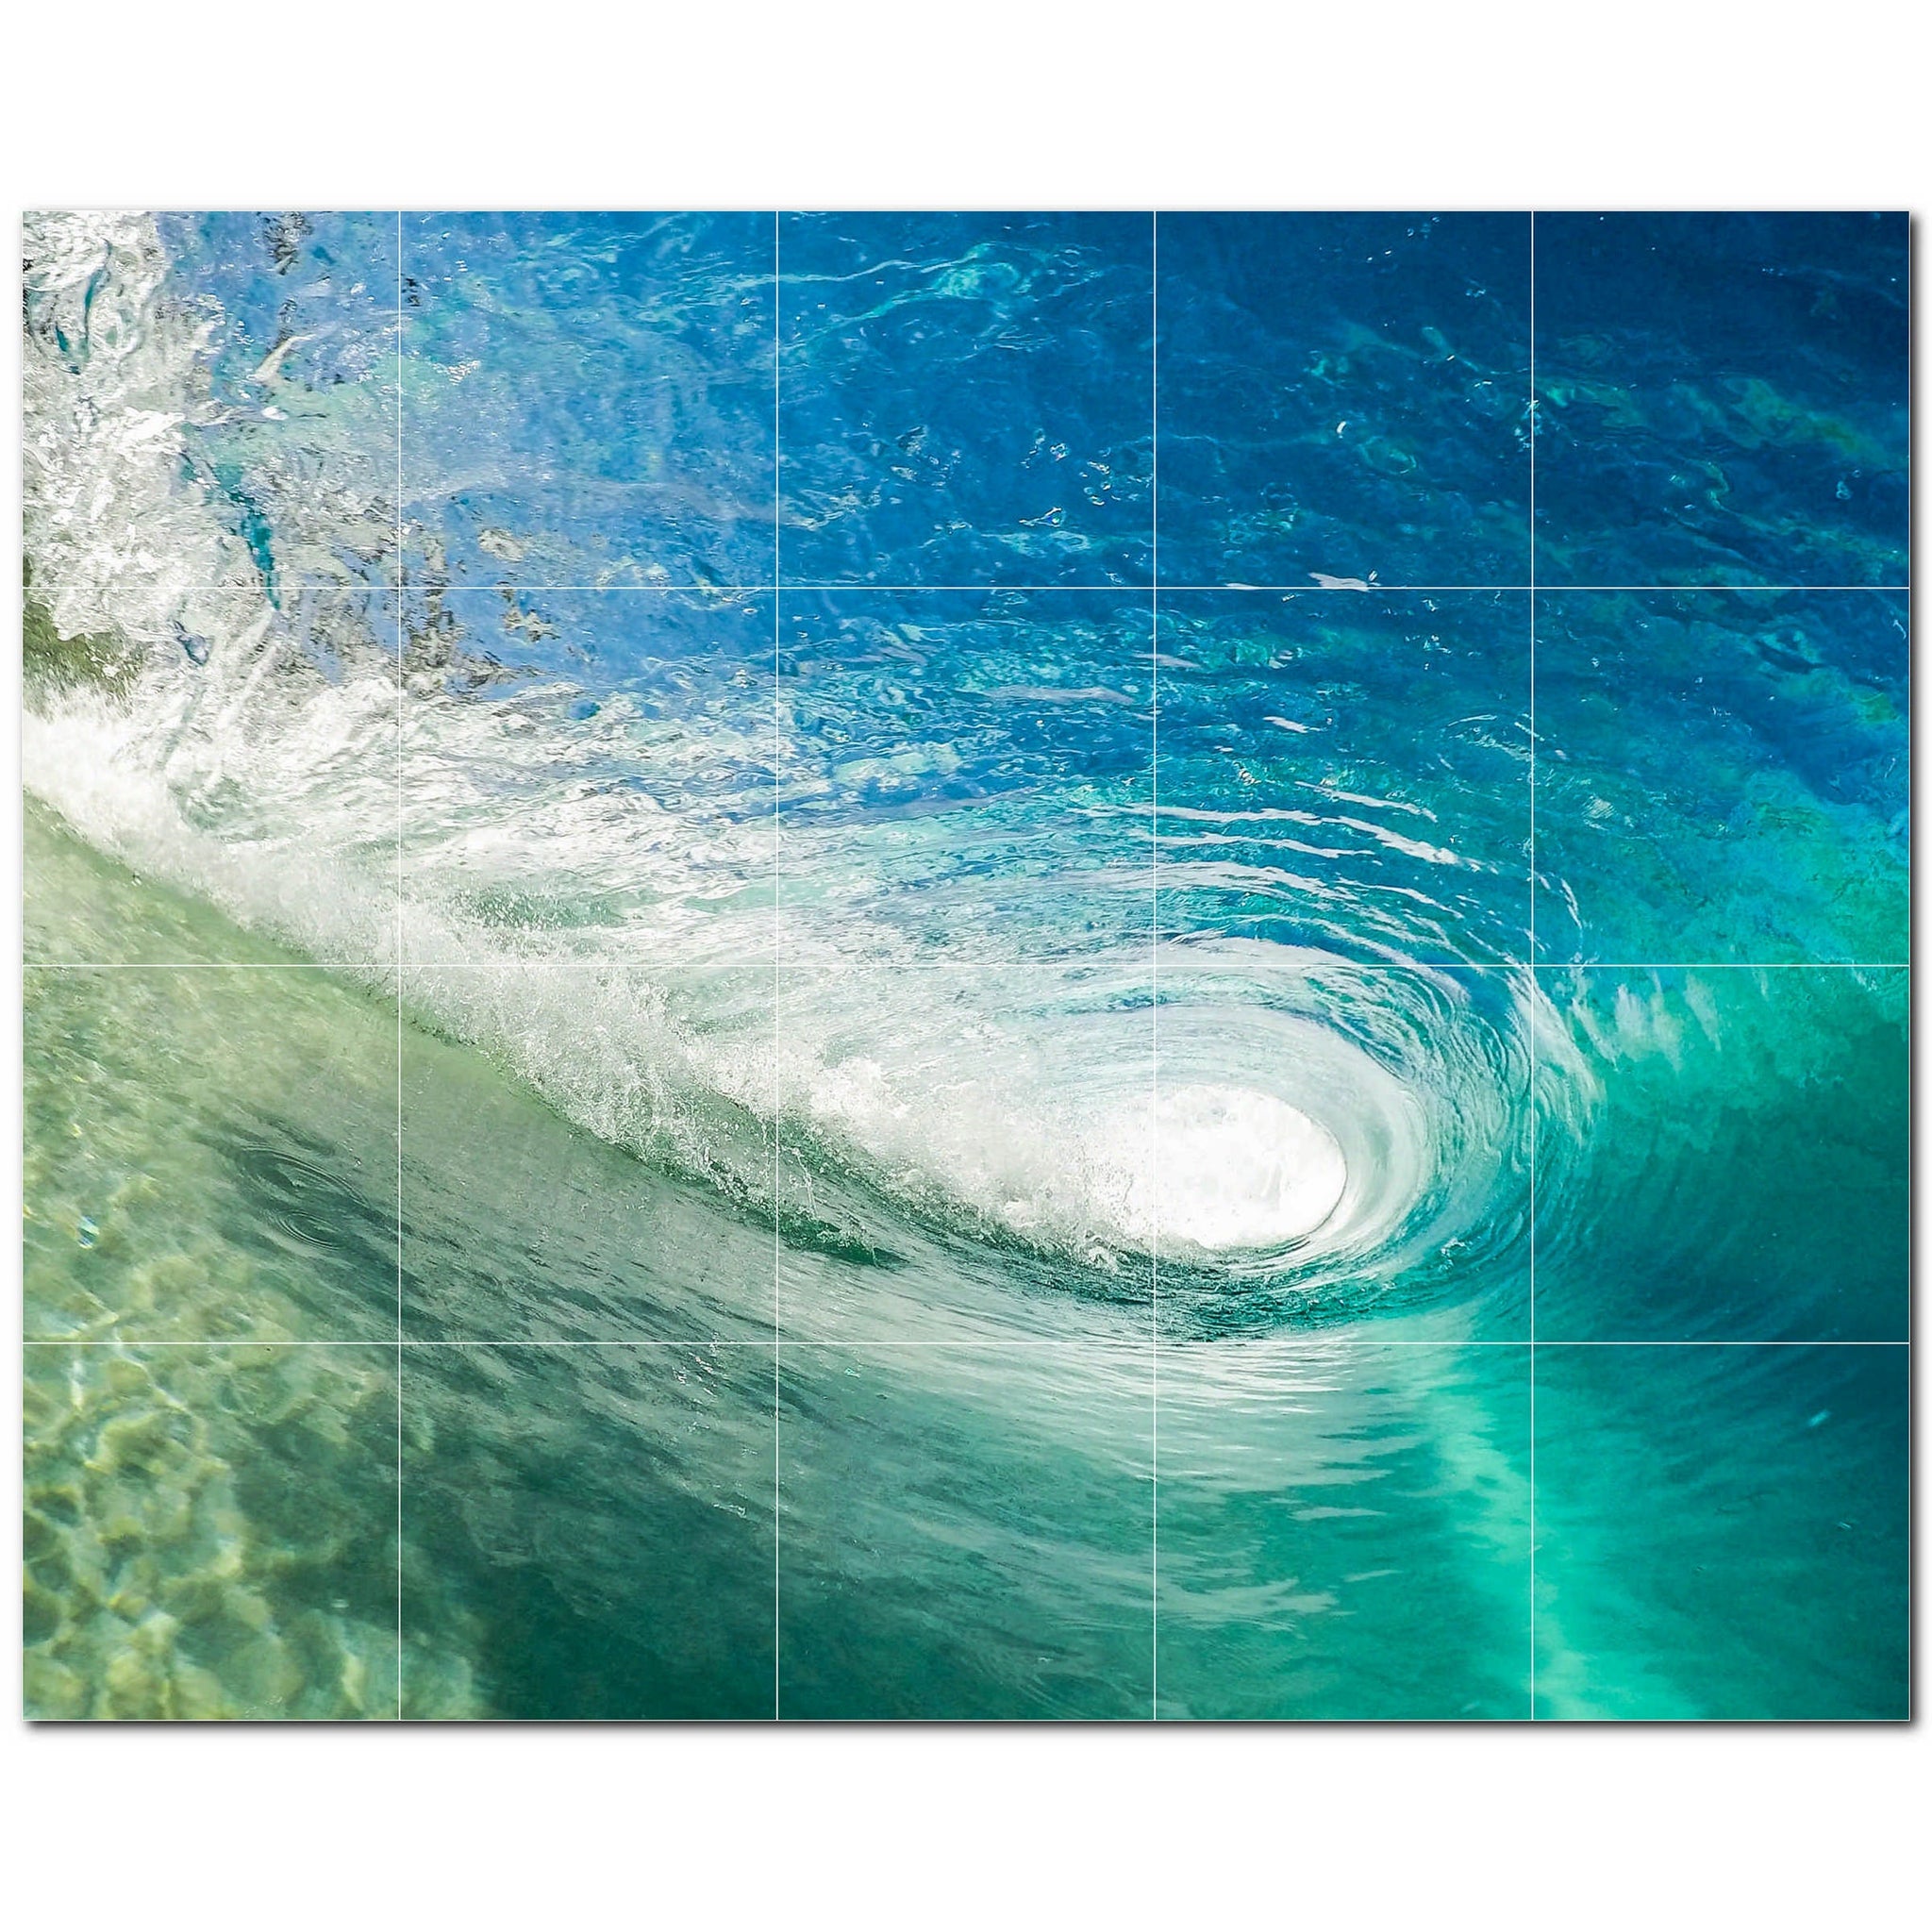 waves ceramic tile wall mural kitchen backsplash bathroom shower p501161